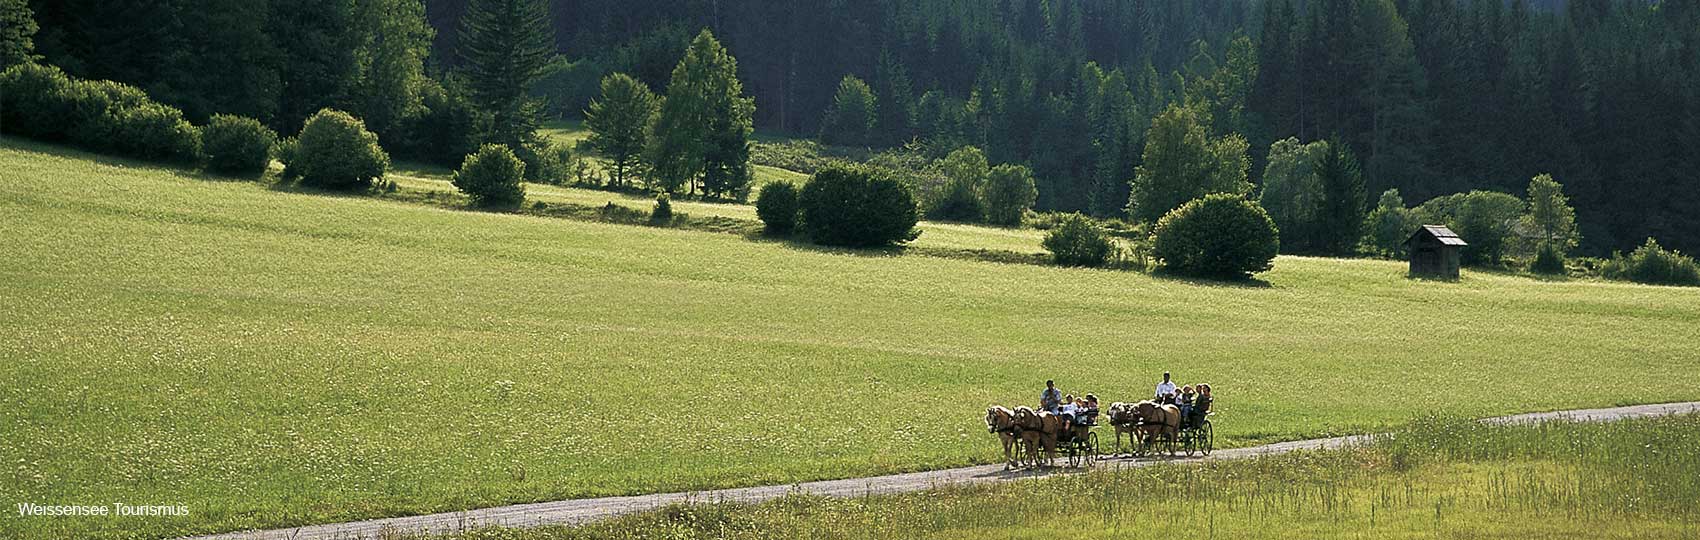 Kutschenfahrt in der Weissensee-Region